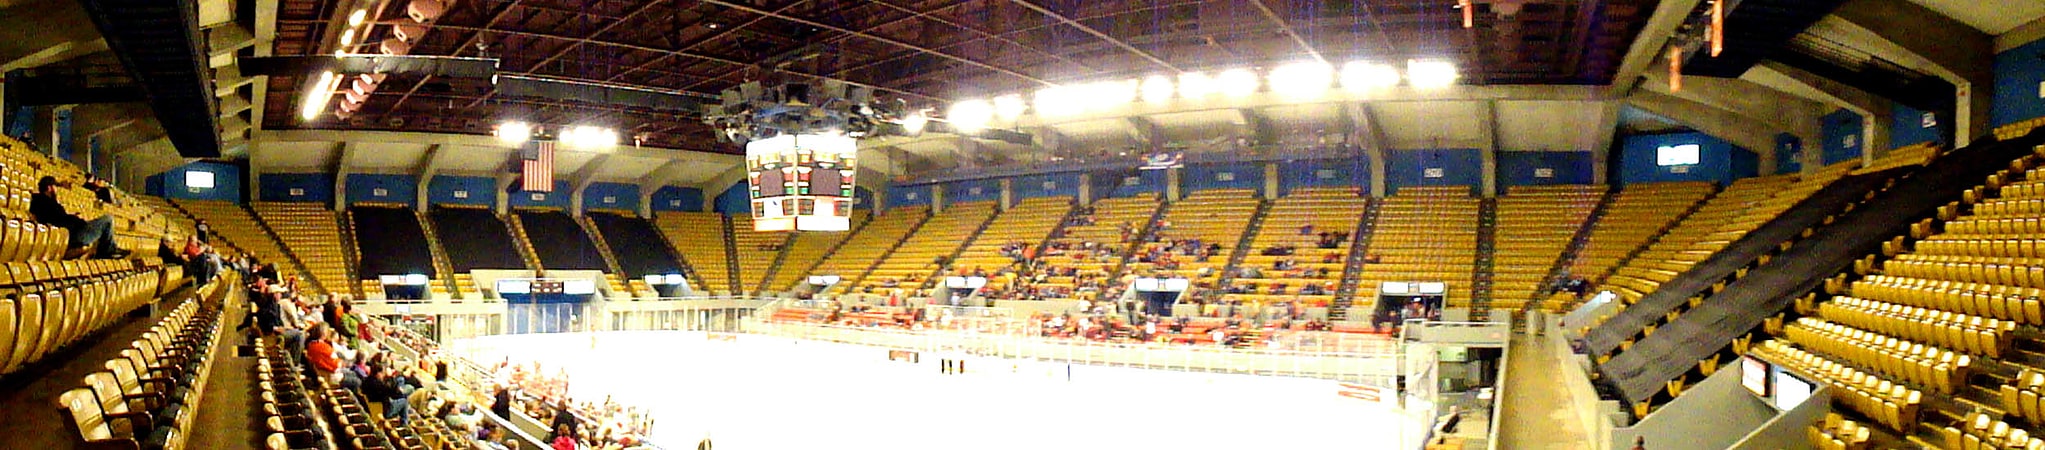 Arena in Roanoke, Virginia